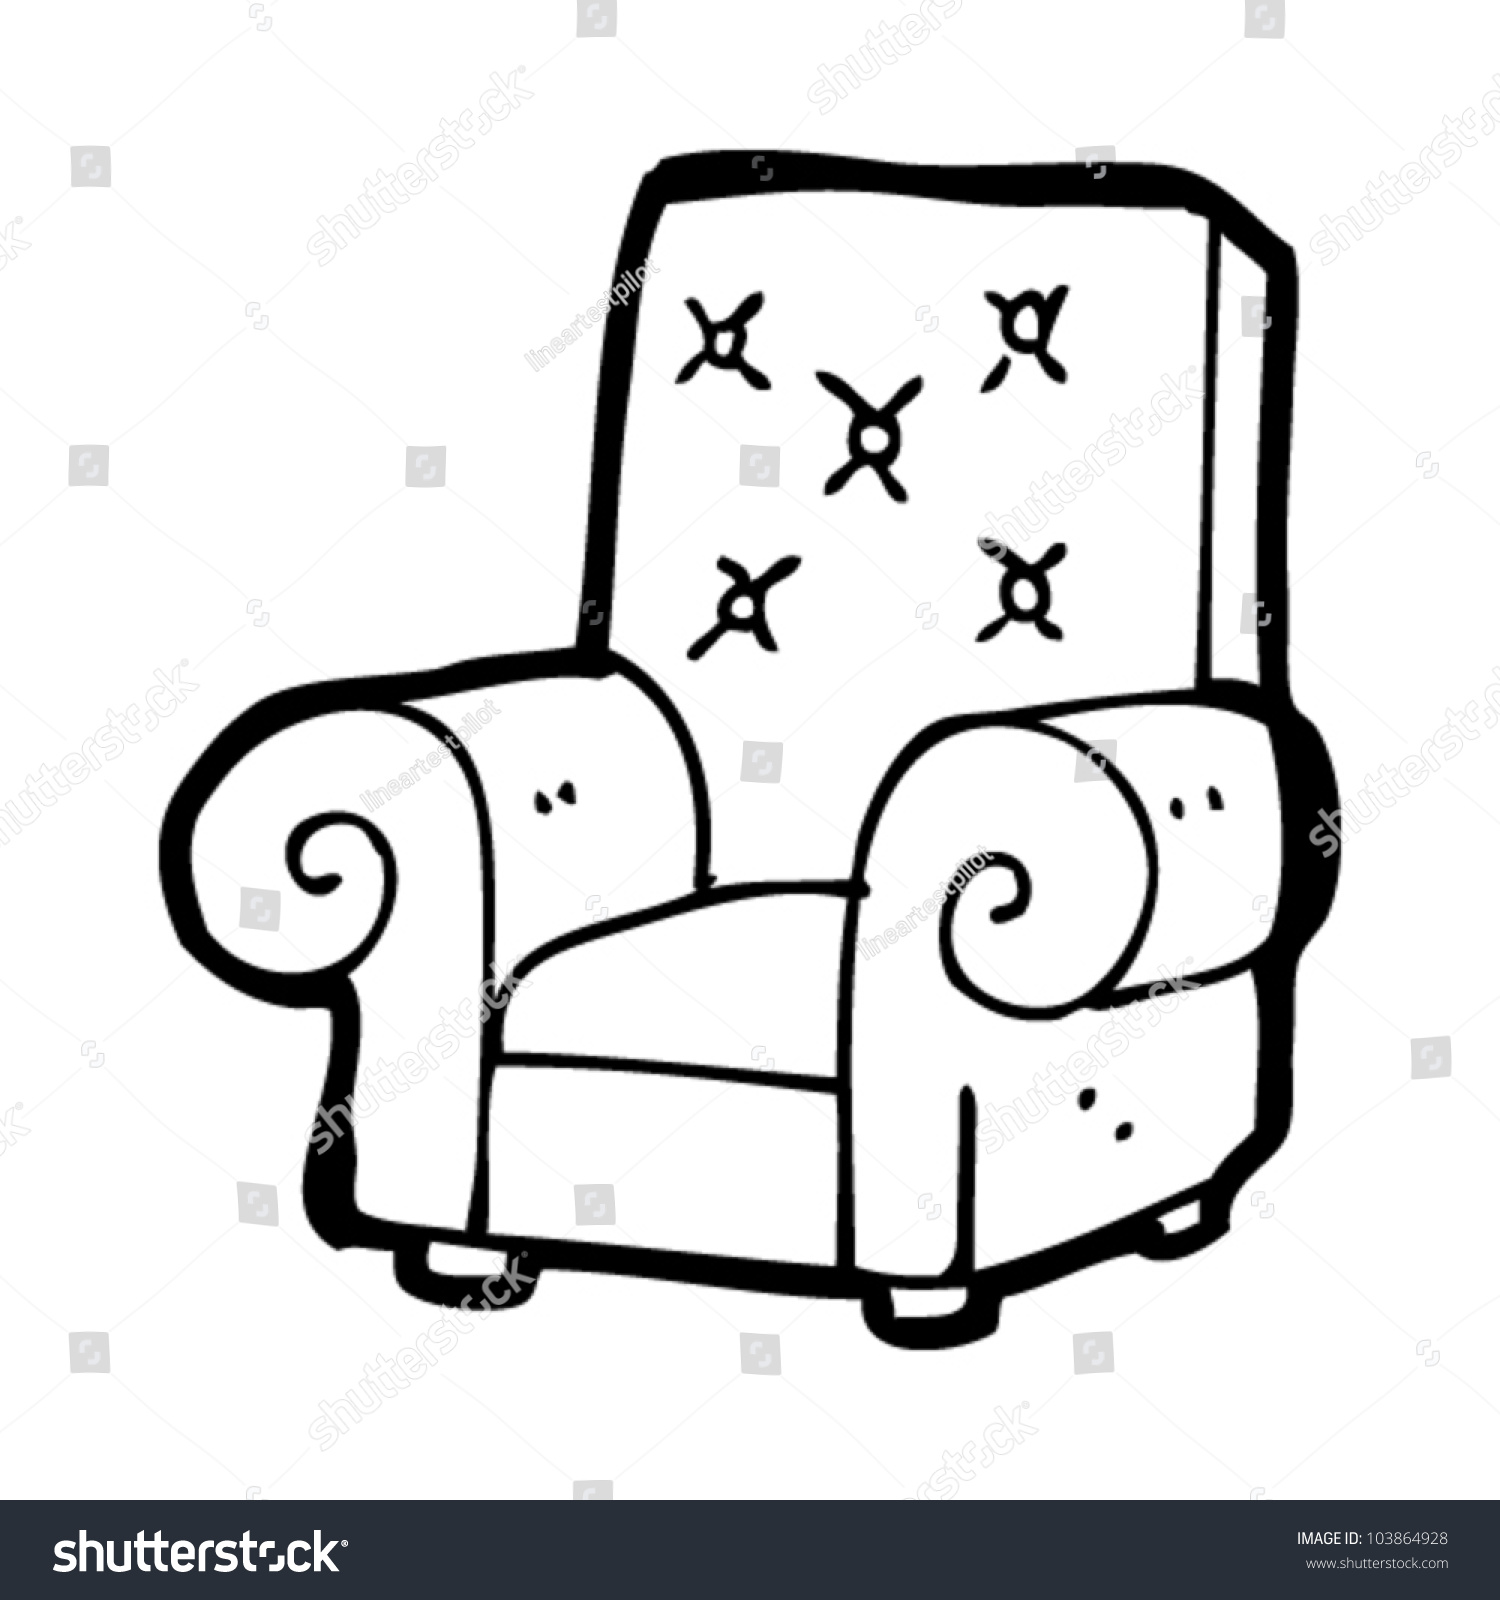 Кресло контурное изображение